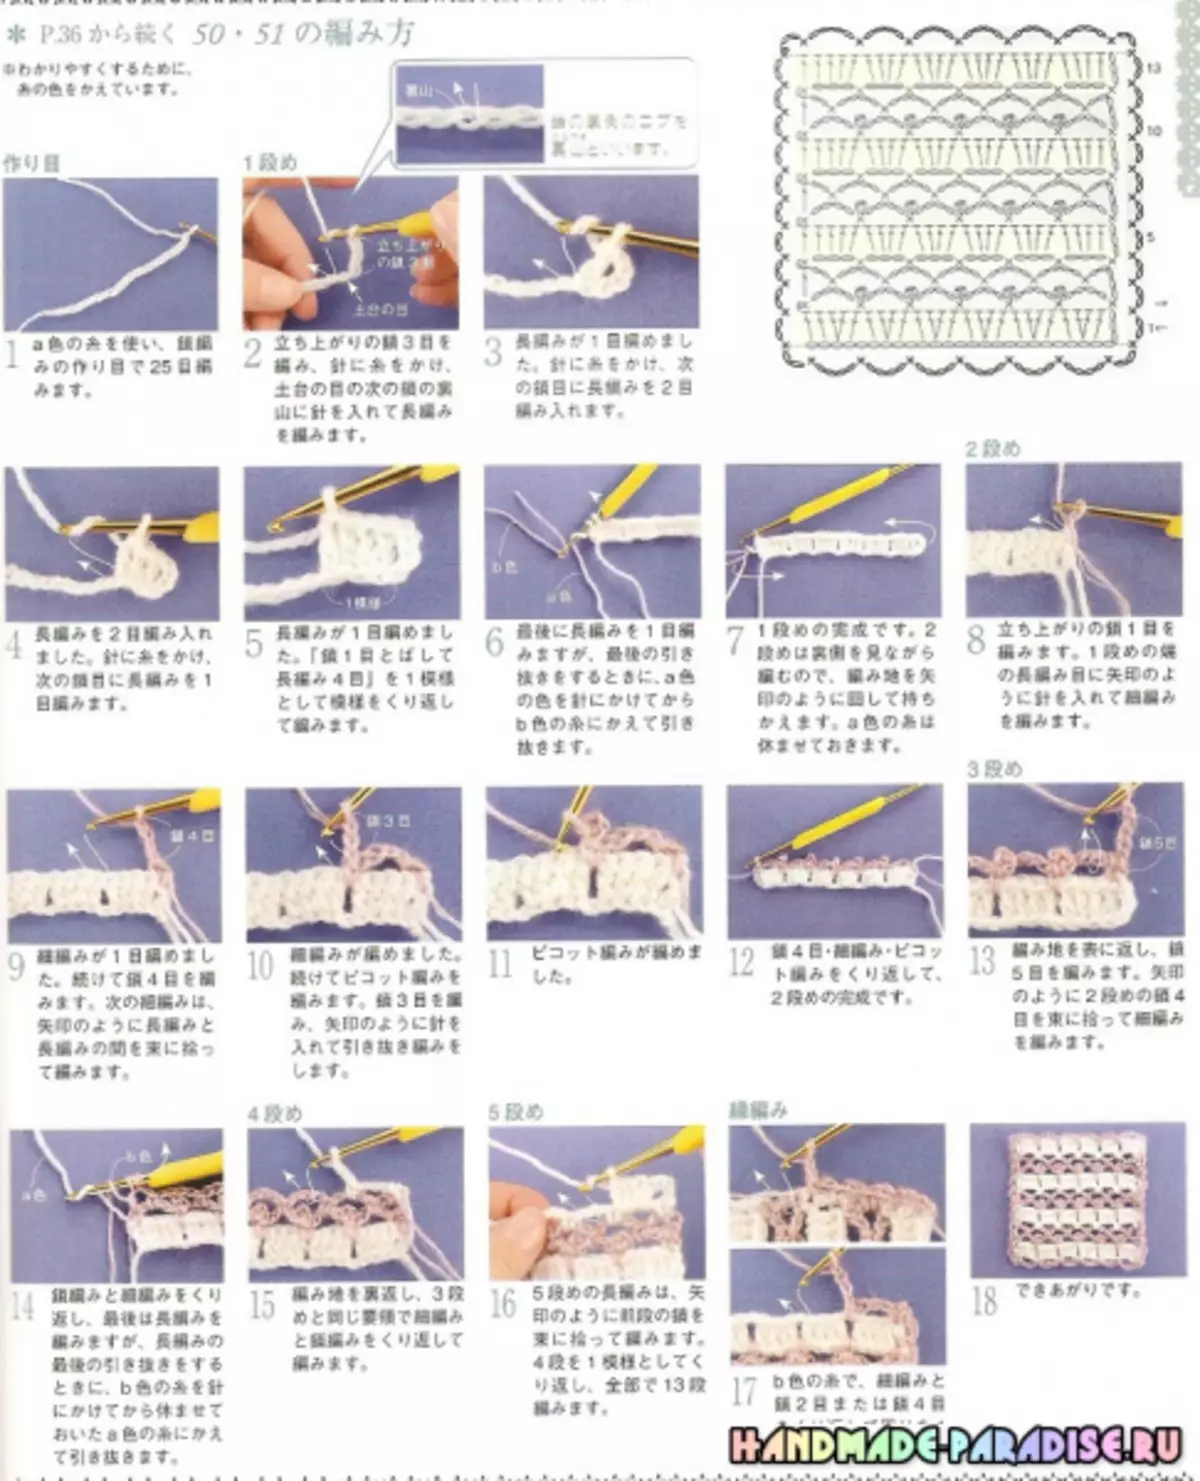 იაპონიის ჟურნალი Crochet სქემებით